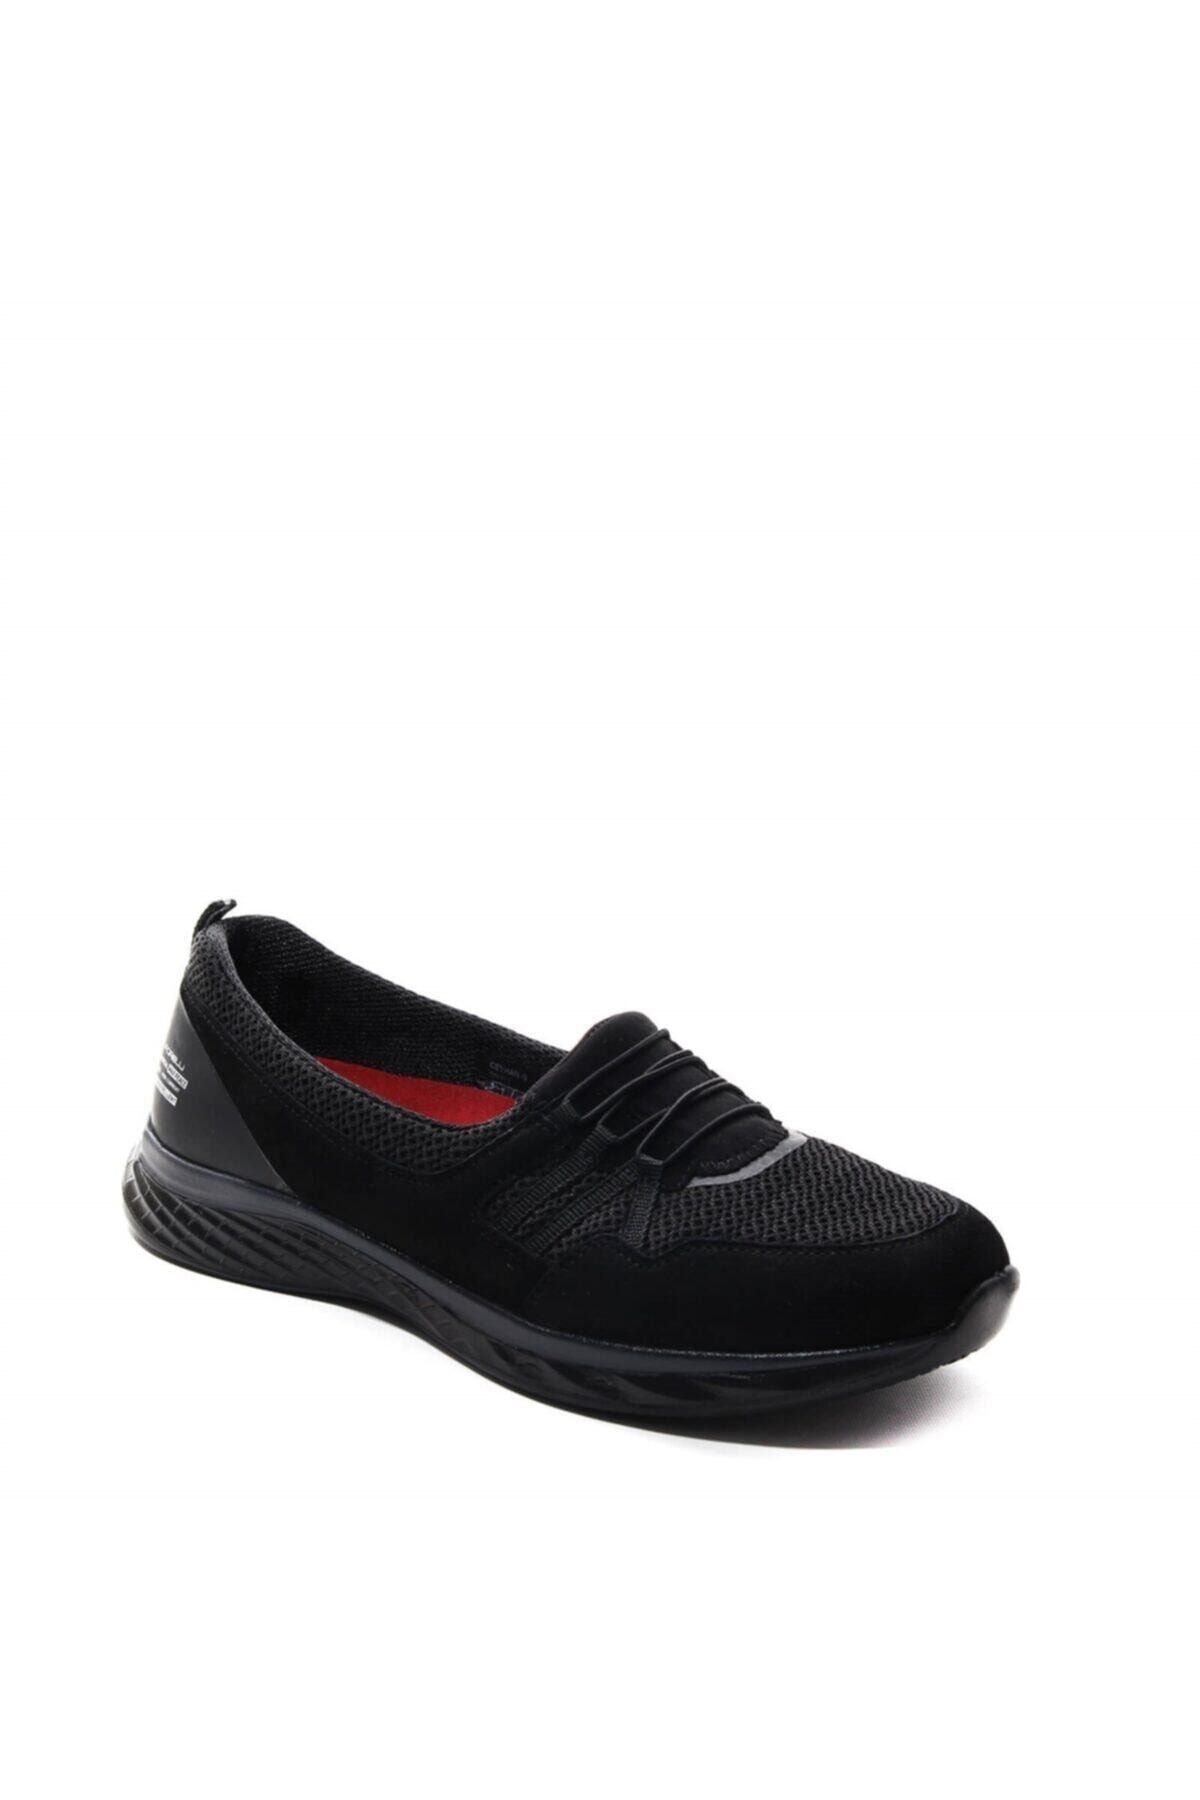 Forelli Ceyhan-g Comfort Kadın Ayakkabı Siyah